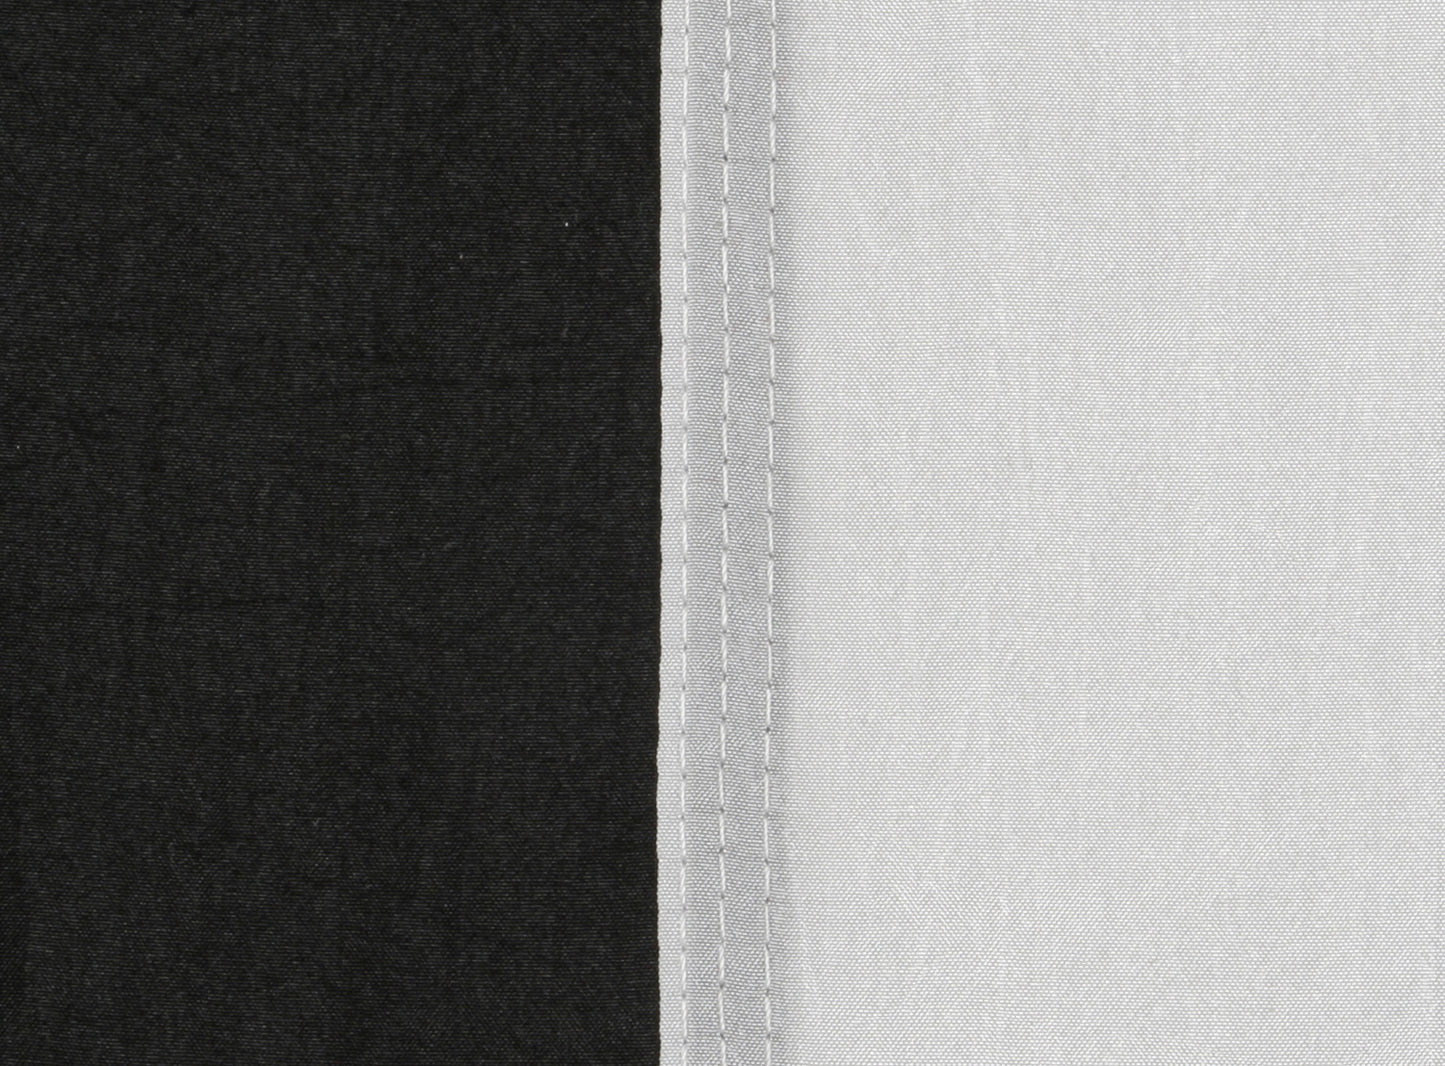 Ultraleichte Nylon Hängematte 275x140 cm - nur 595 Gramm - Traglast 300 kg, schwarz-weiß